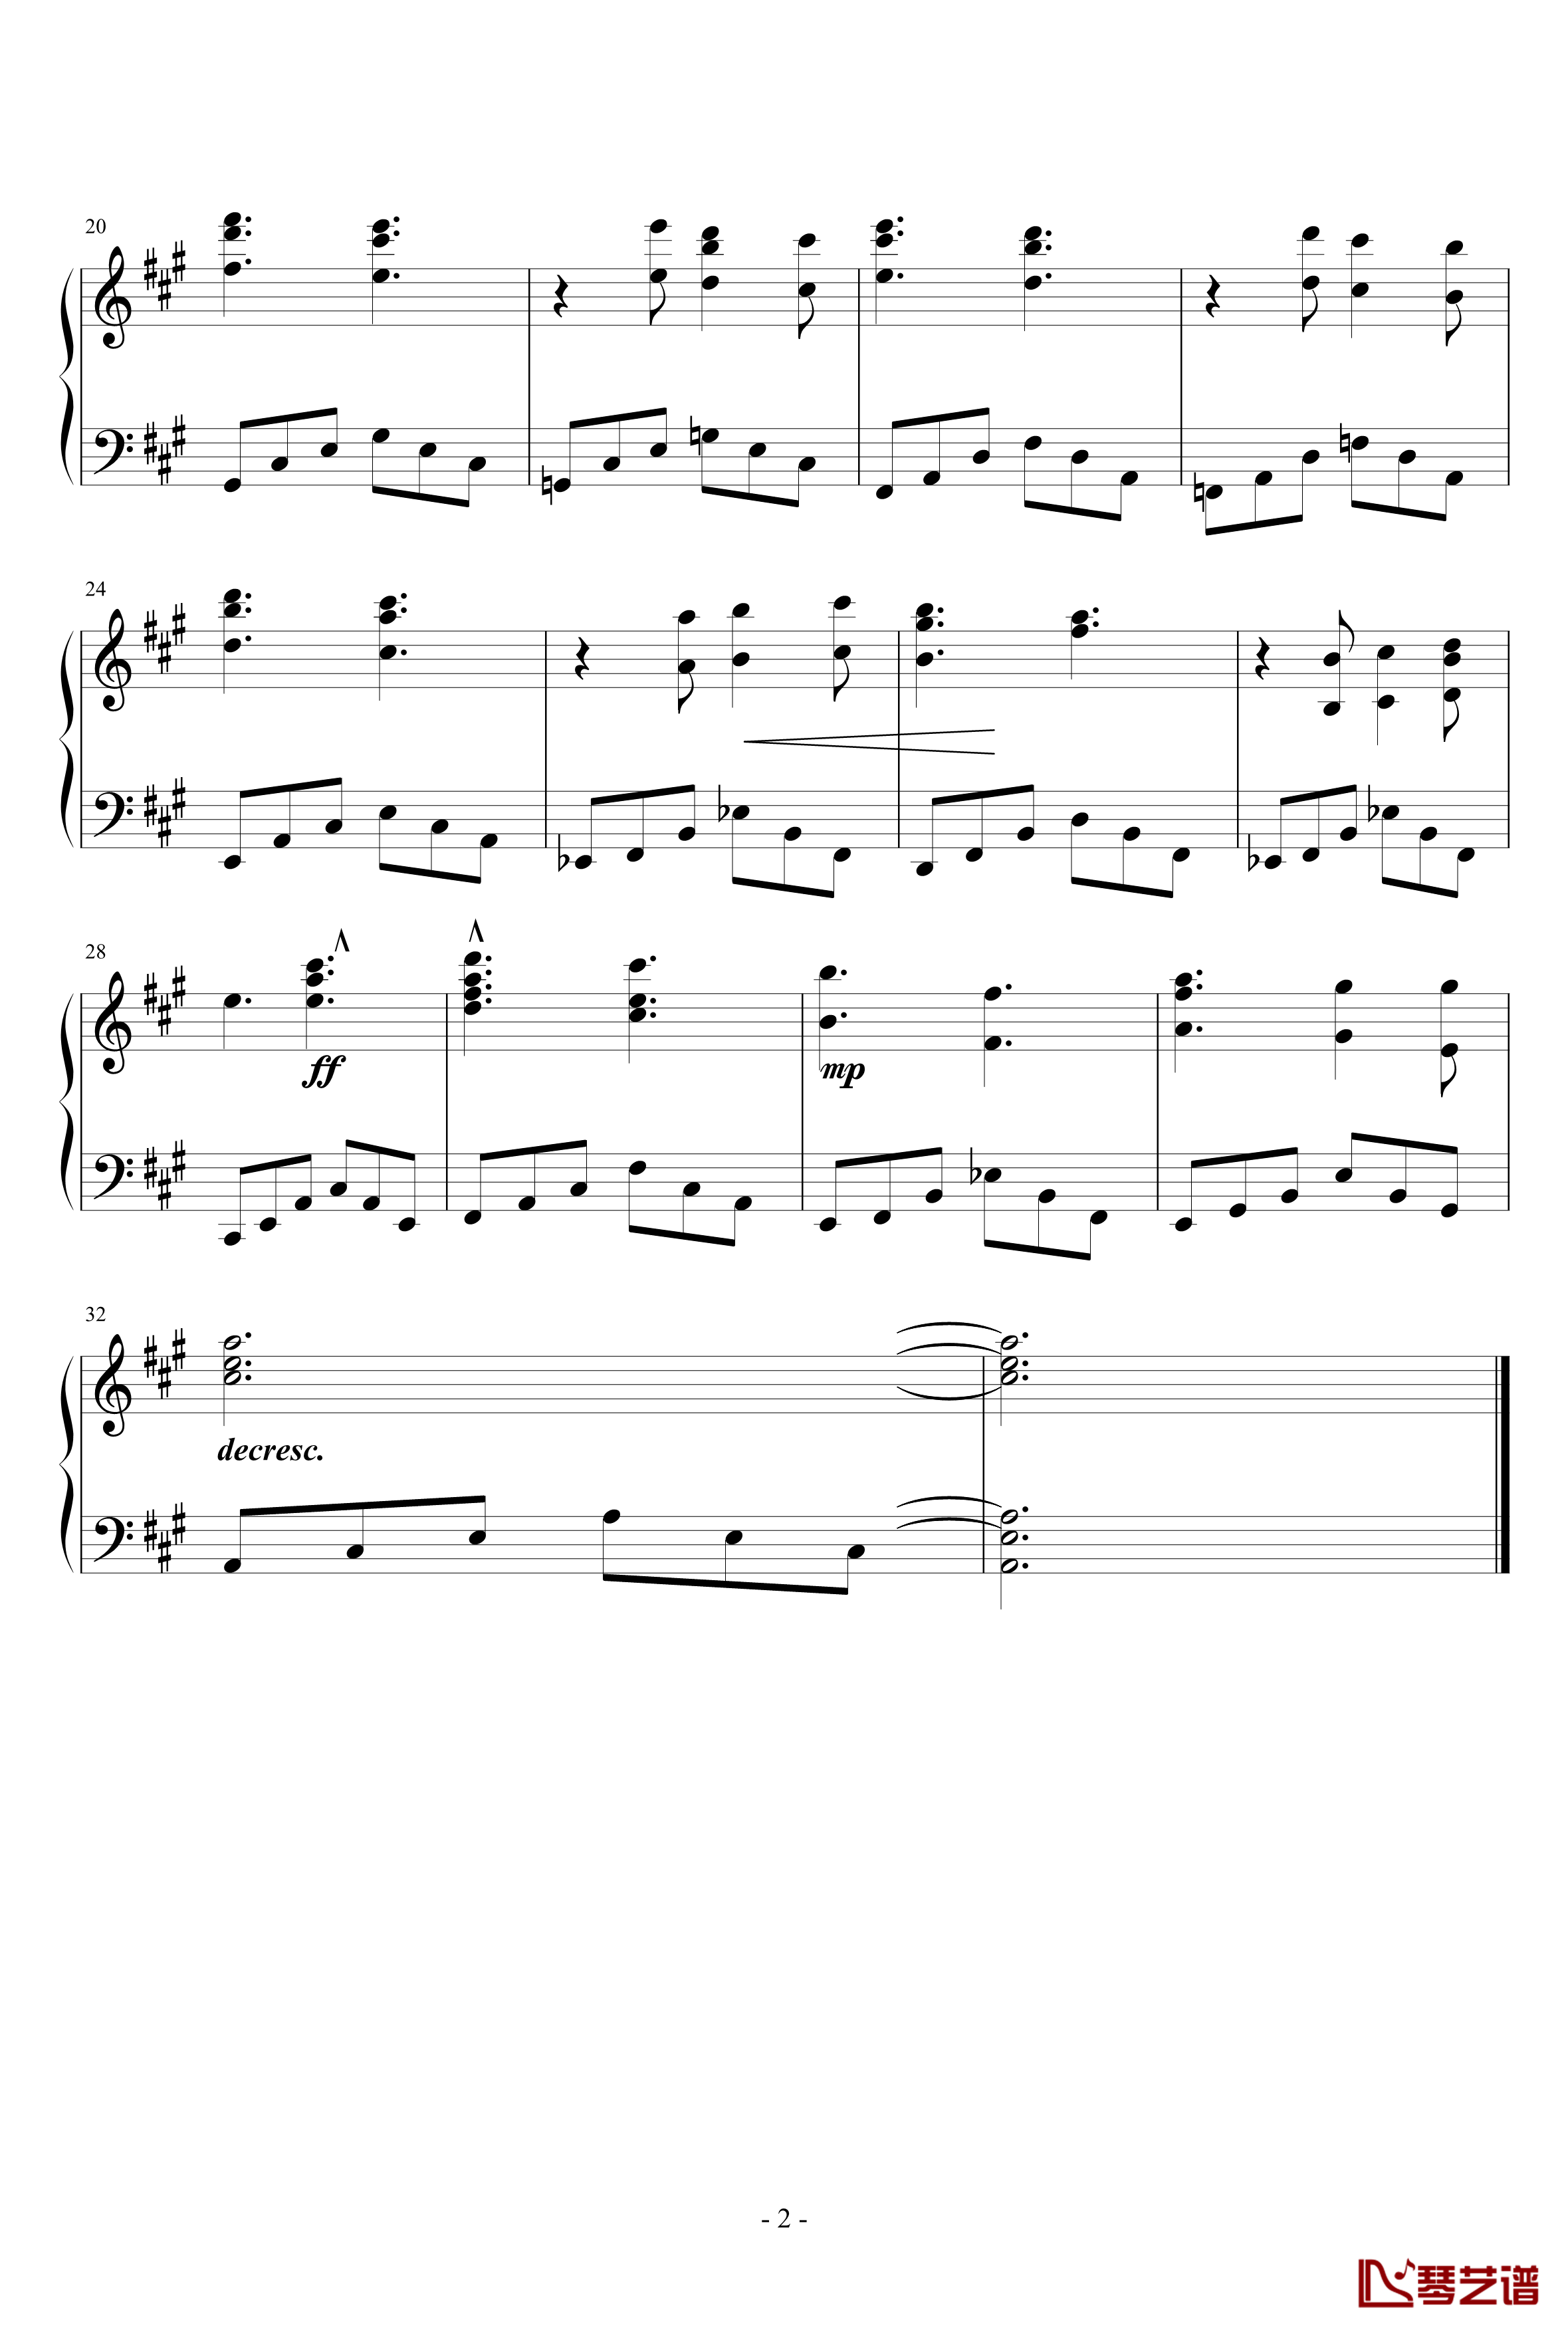 Nichijou钢琴谱-94话Genius的插曲2